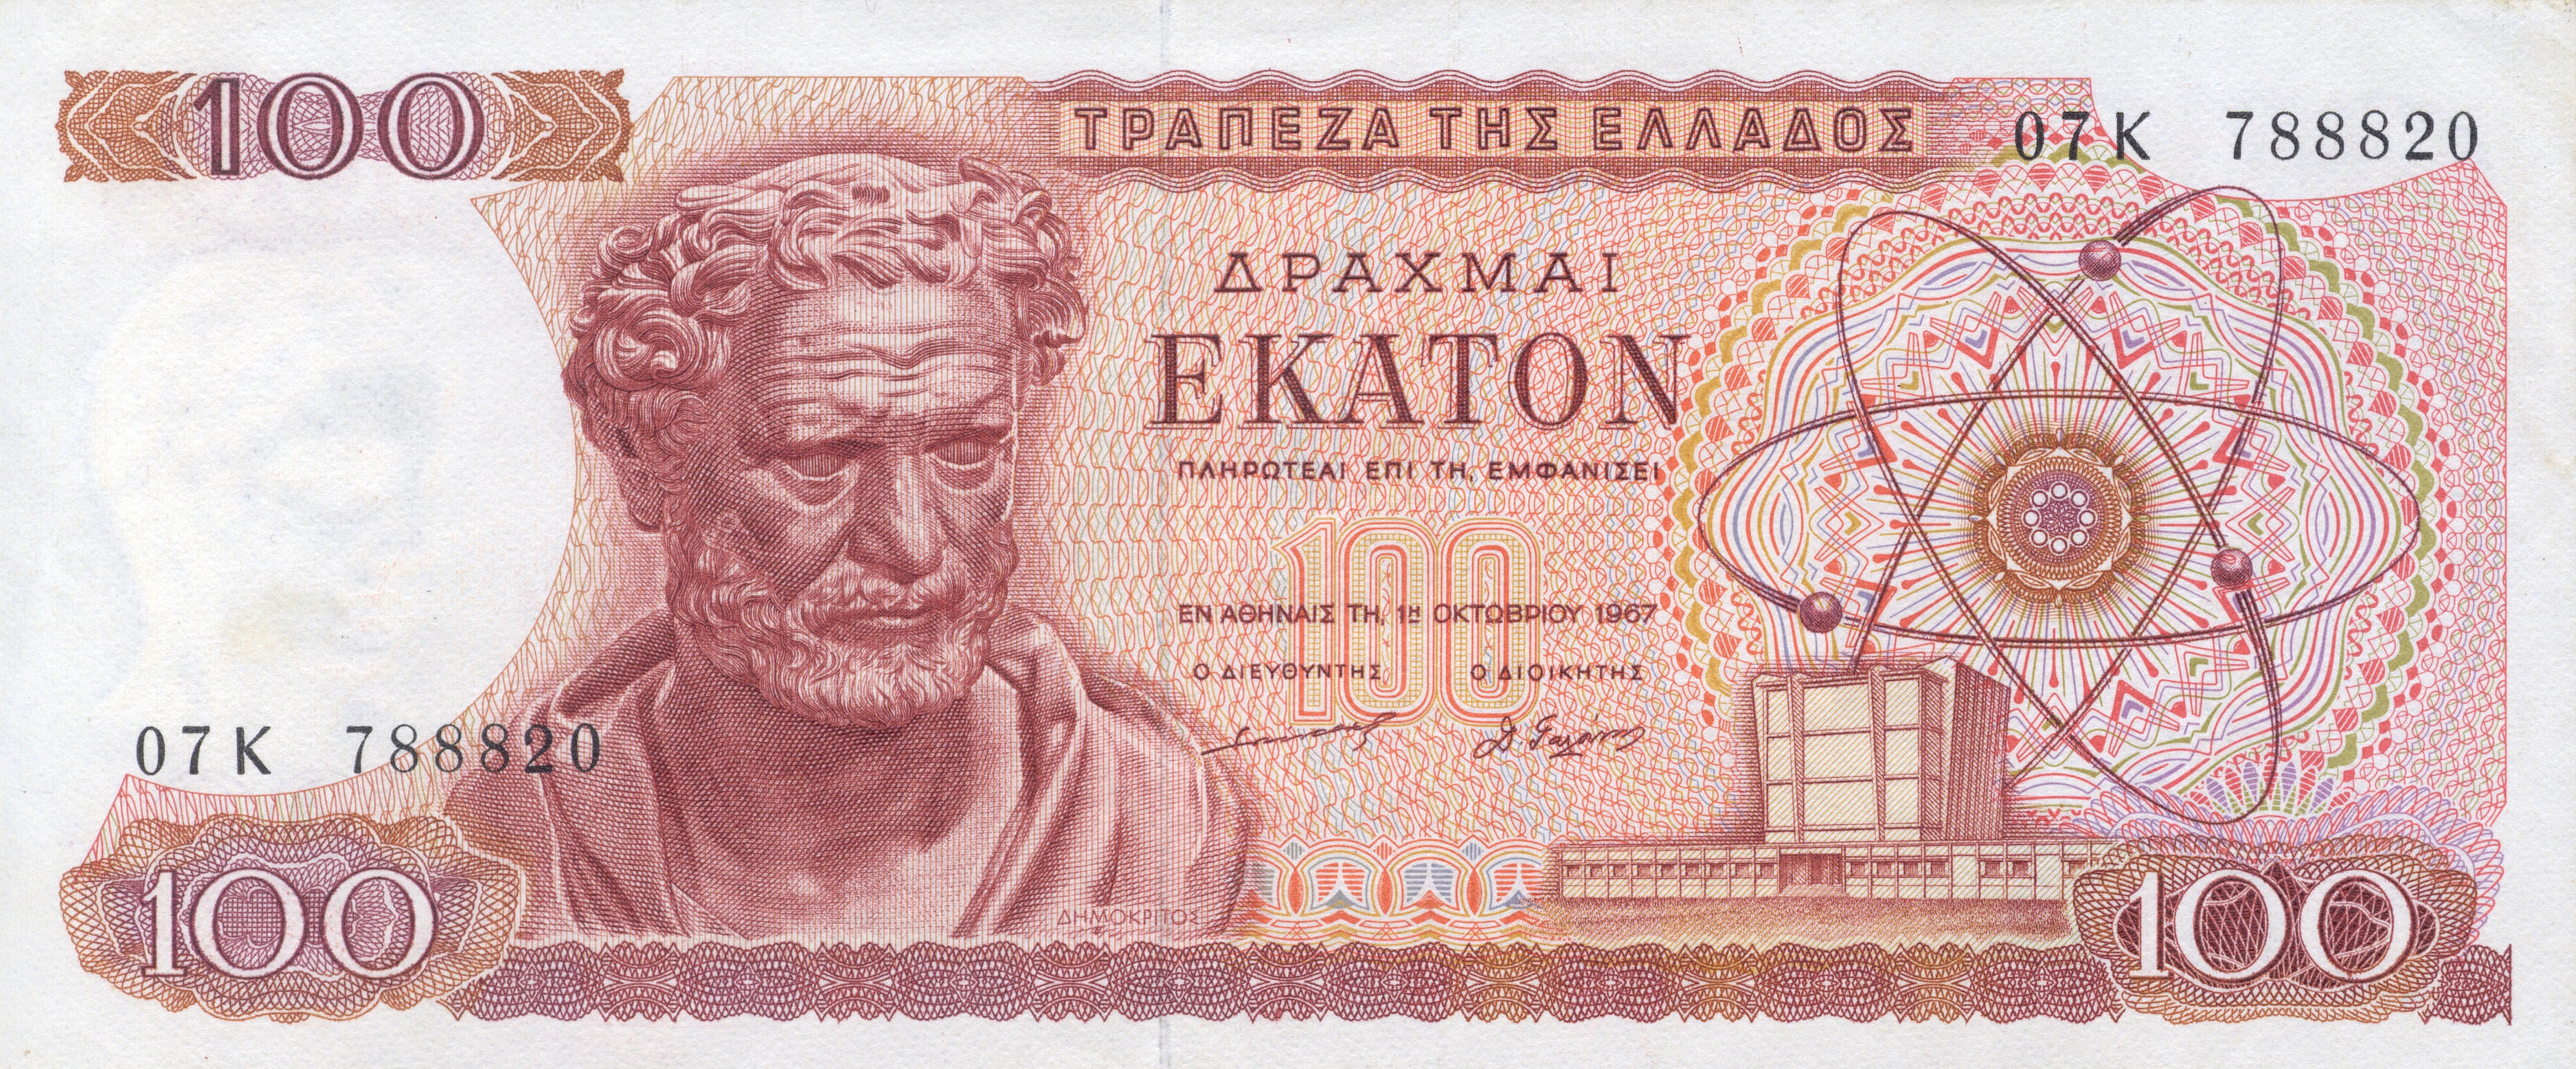 353824 descargar imagen hecho por el hombre, dracma griego, monedas: fondos de pantalla y protectores de pantalla gratis